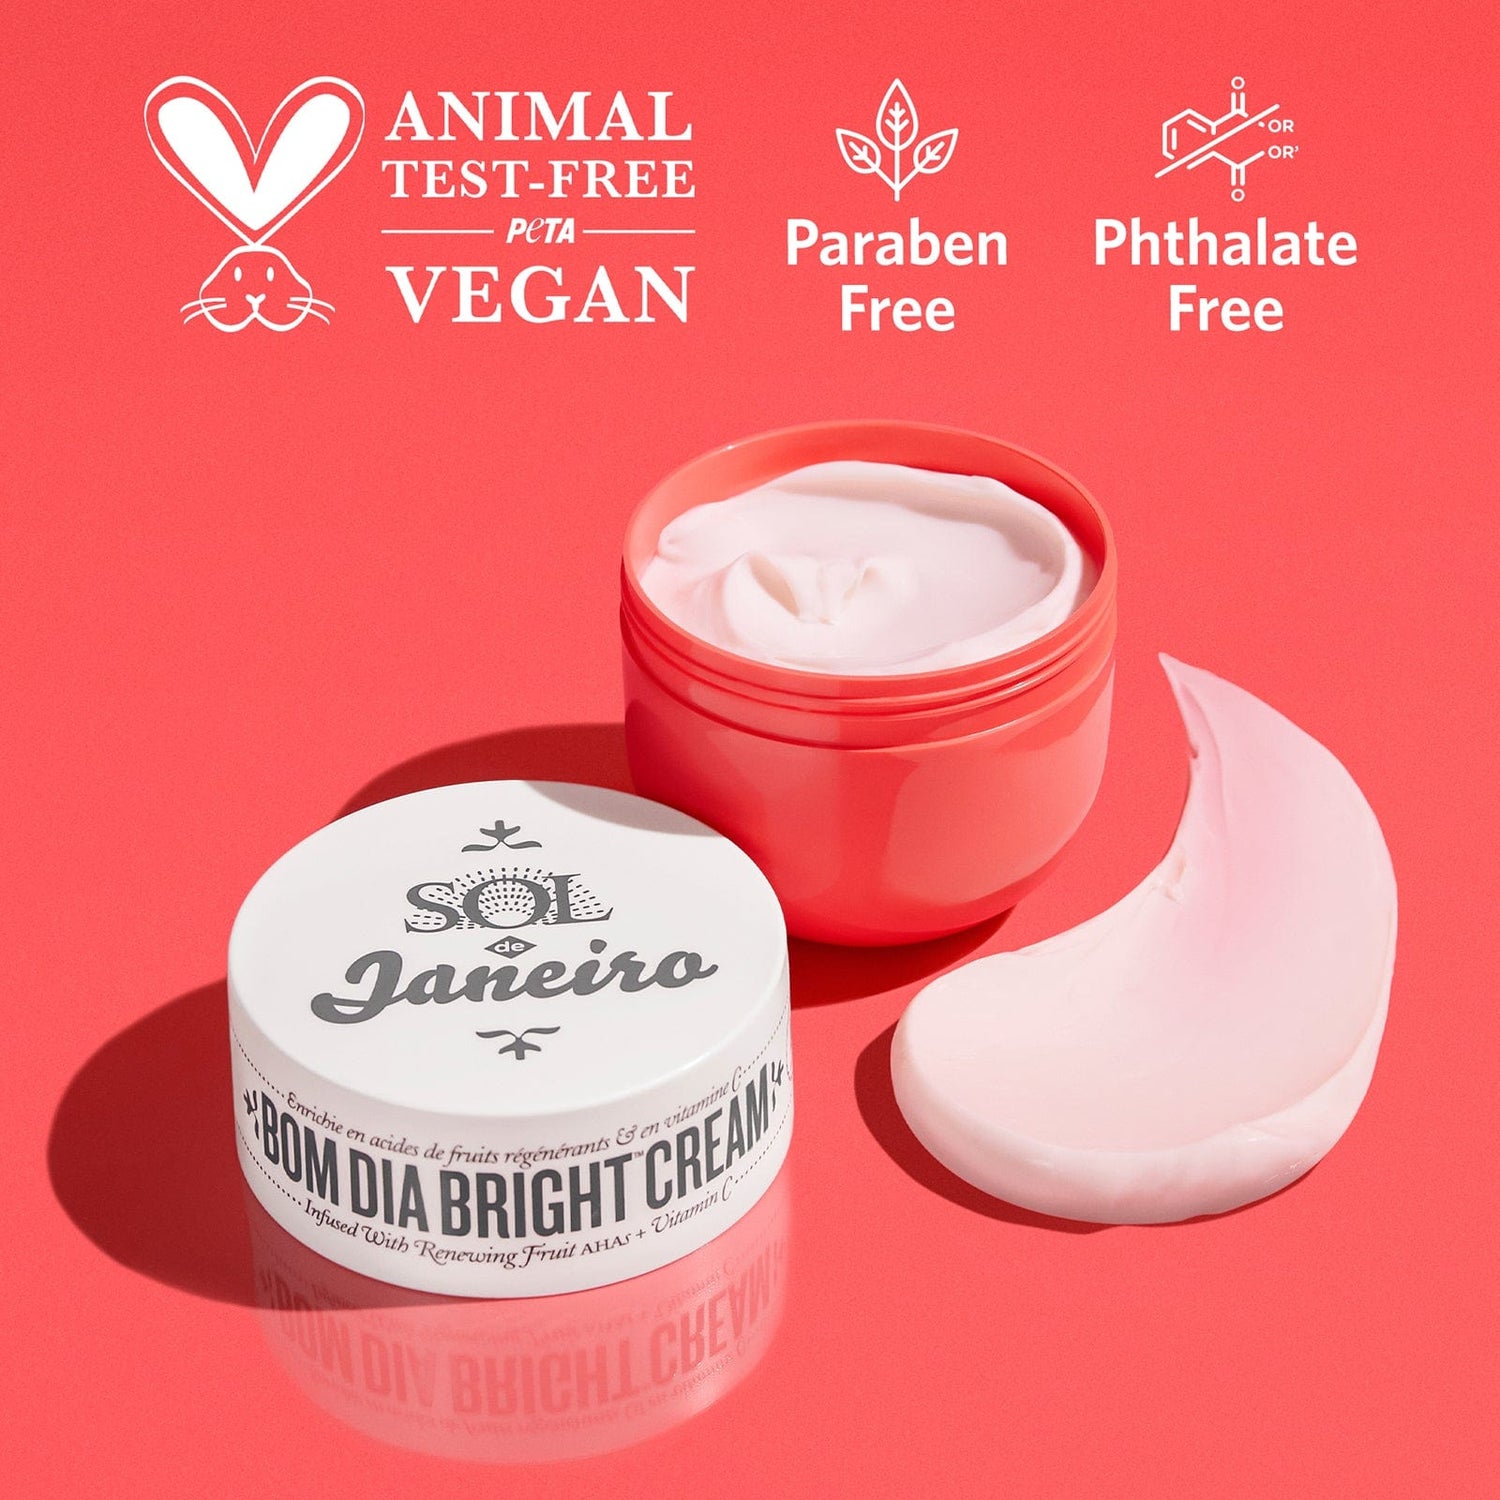 peta certified Animal test-free - vegan - paraben free - phthalate free